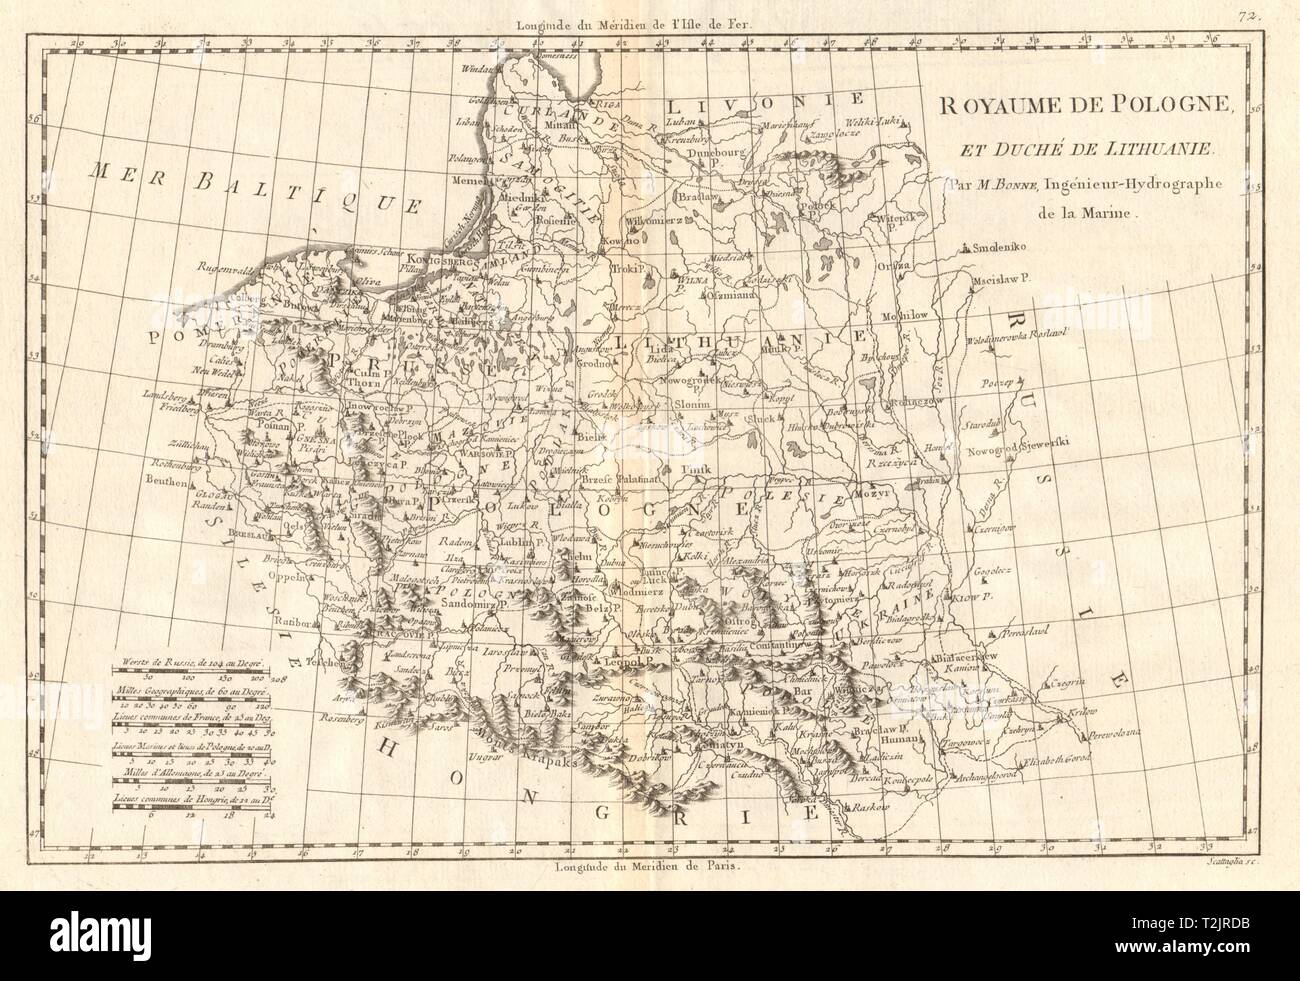 Royaume de Pologne et Duché de Lithuanie. La Pologne et la Lituanie. BONNE CARTE 1789 Banque D'Images